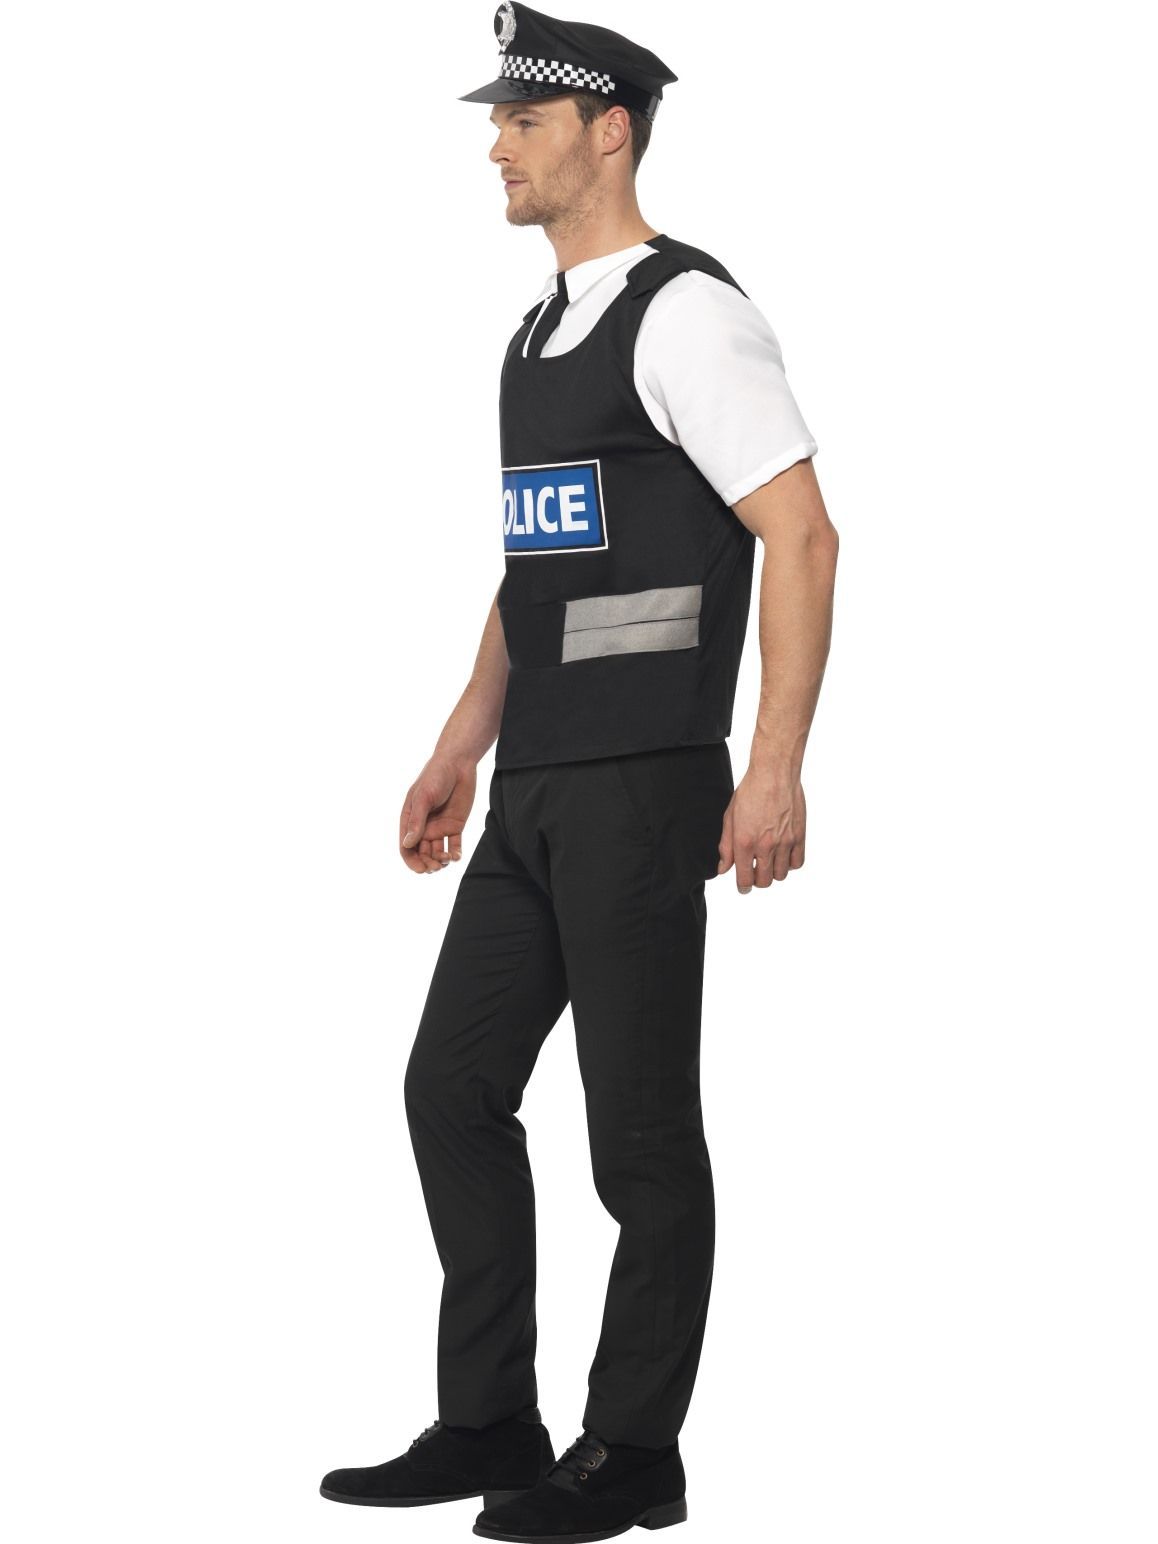 Costume Adult Police Cop Instant Kit Black Medium